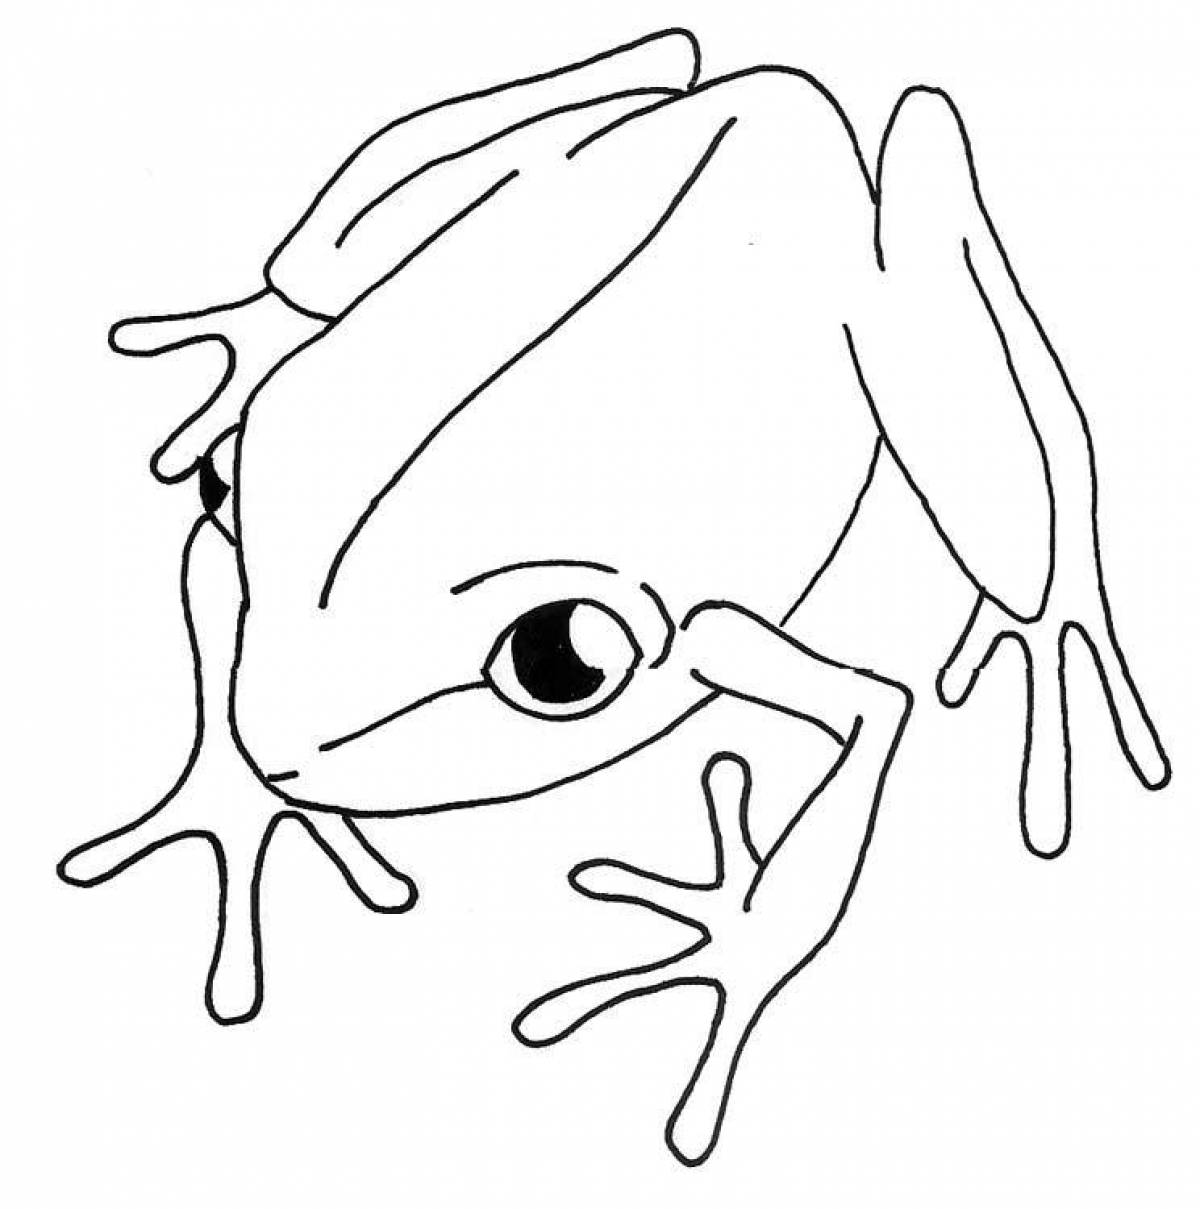 Анимированная раскраска лягушка